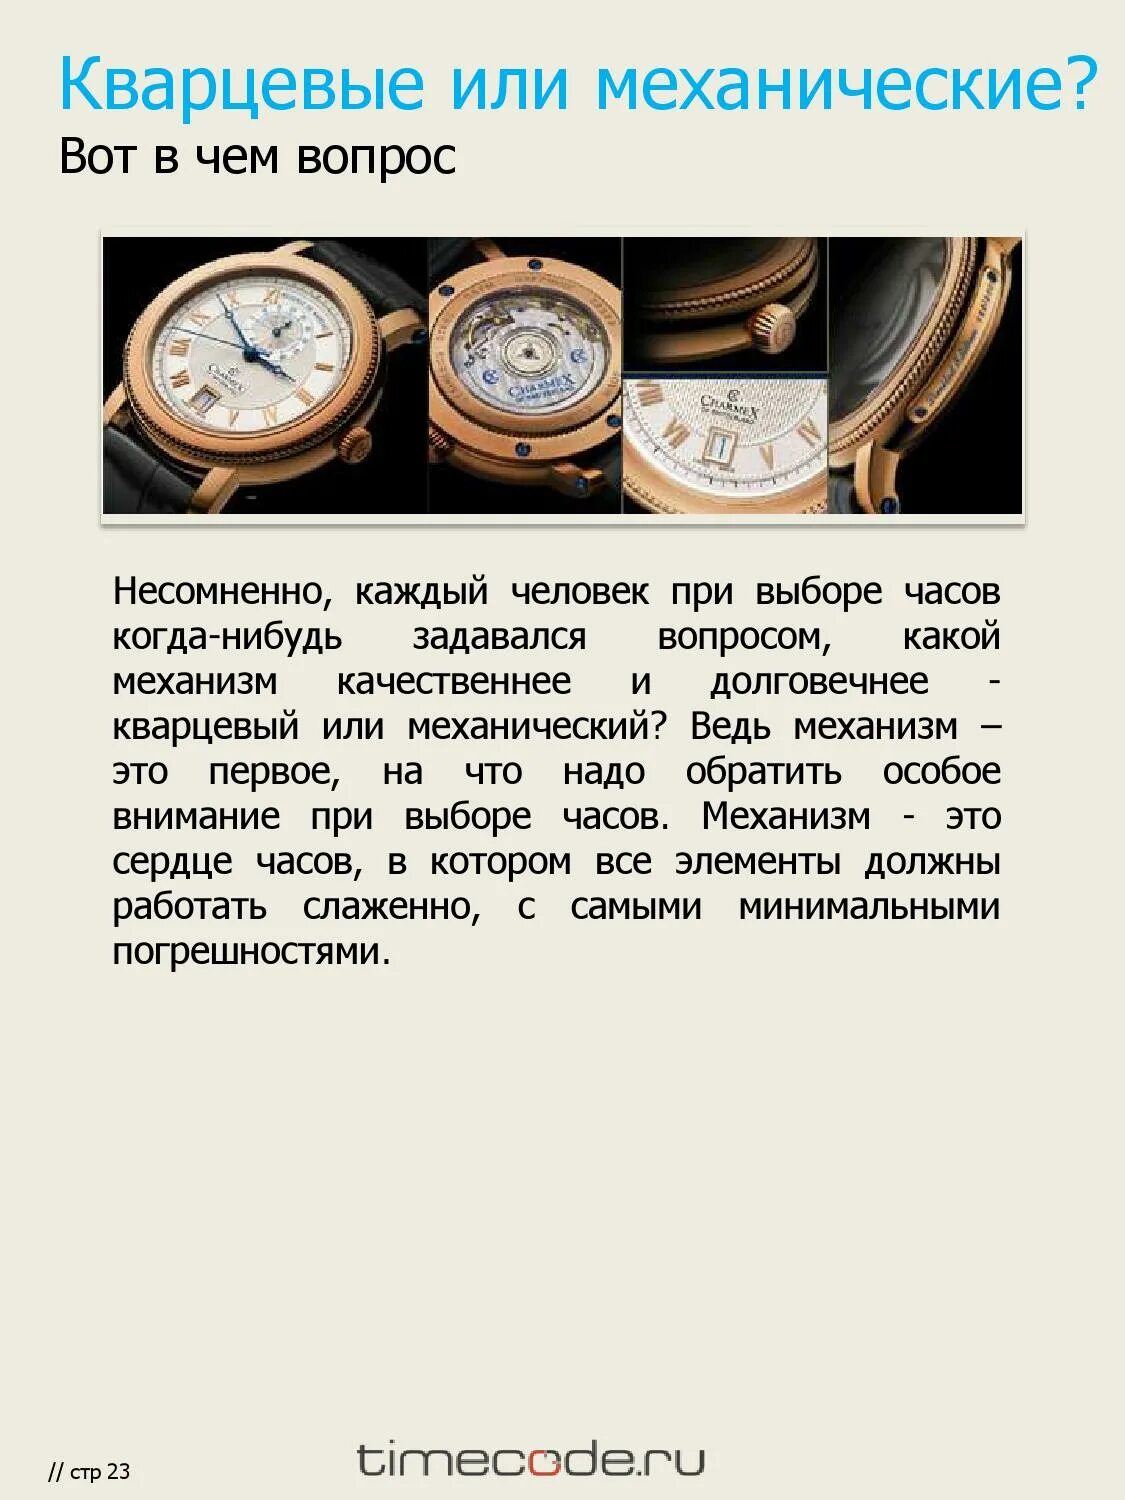 Механические и кварцевые часы. Кварцевые или механические часы. Кварцевые часы и механические отличие. Кварцевые и механические часы разница.